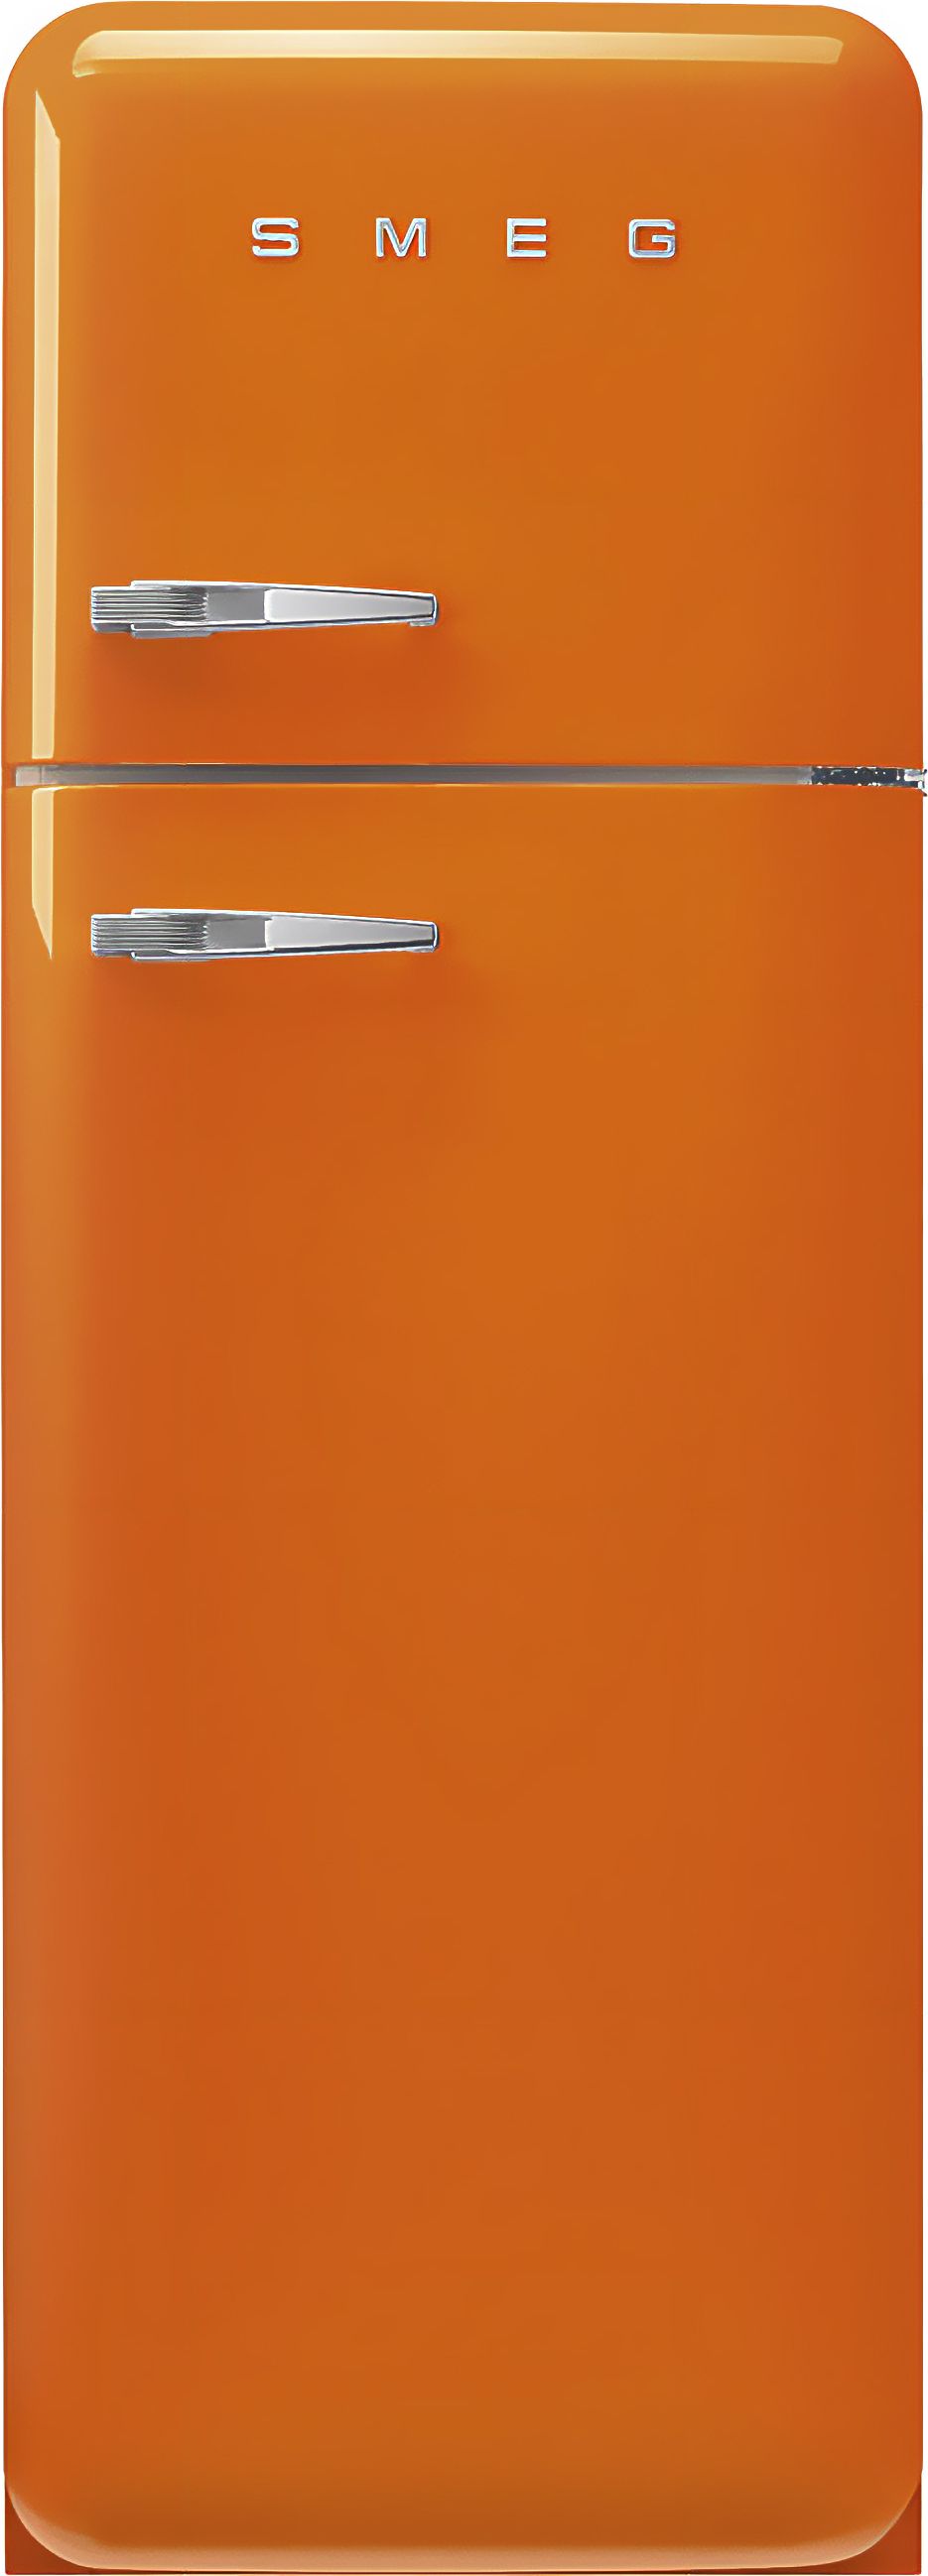 Smeg Right Hand Hinge FAB30ROR5UK 70/30 Fridge Freezer - Orange - D Rated, Orange